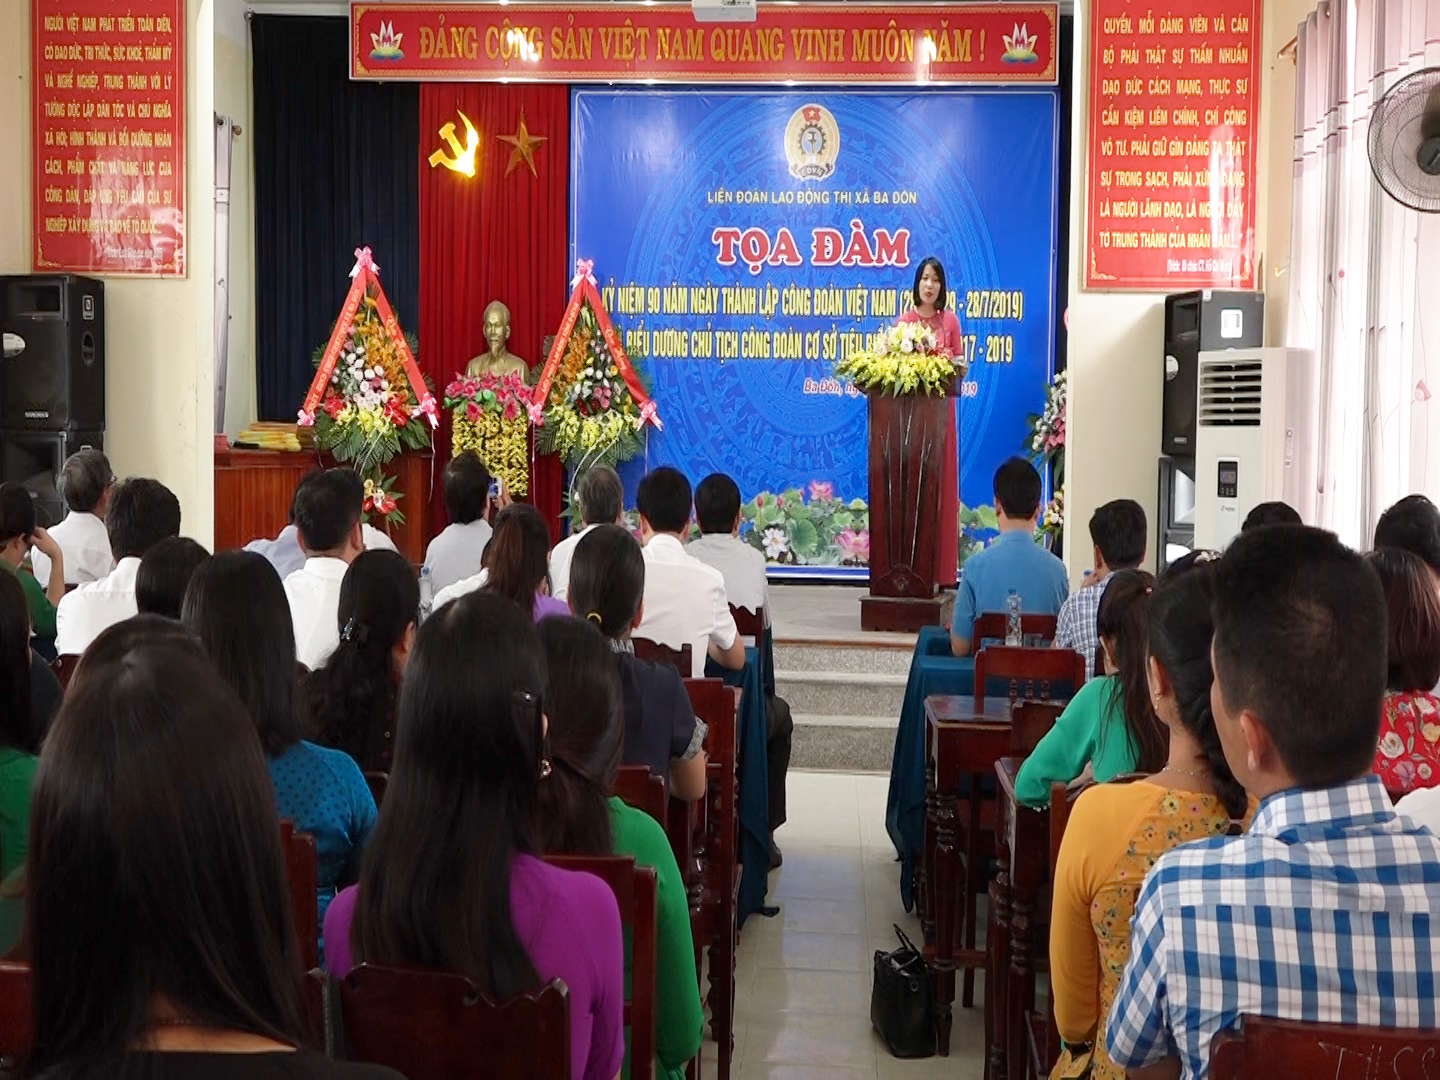 Tọa đàm kỷ niệm 90 năm thành lập Công đoàn Việt Nam, tuyên dương Chủ tịch công đoàn cơ sở tiêu biểu giai đoạn 2017-2019.